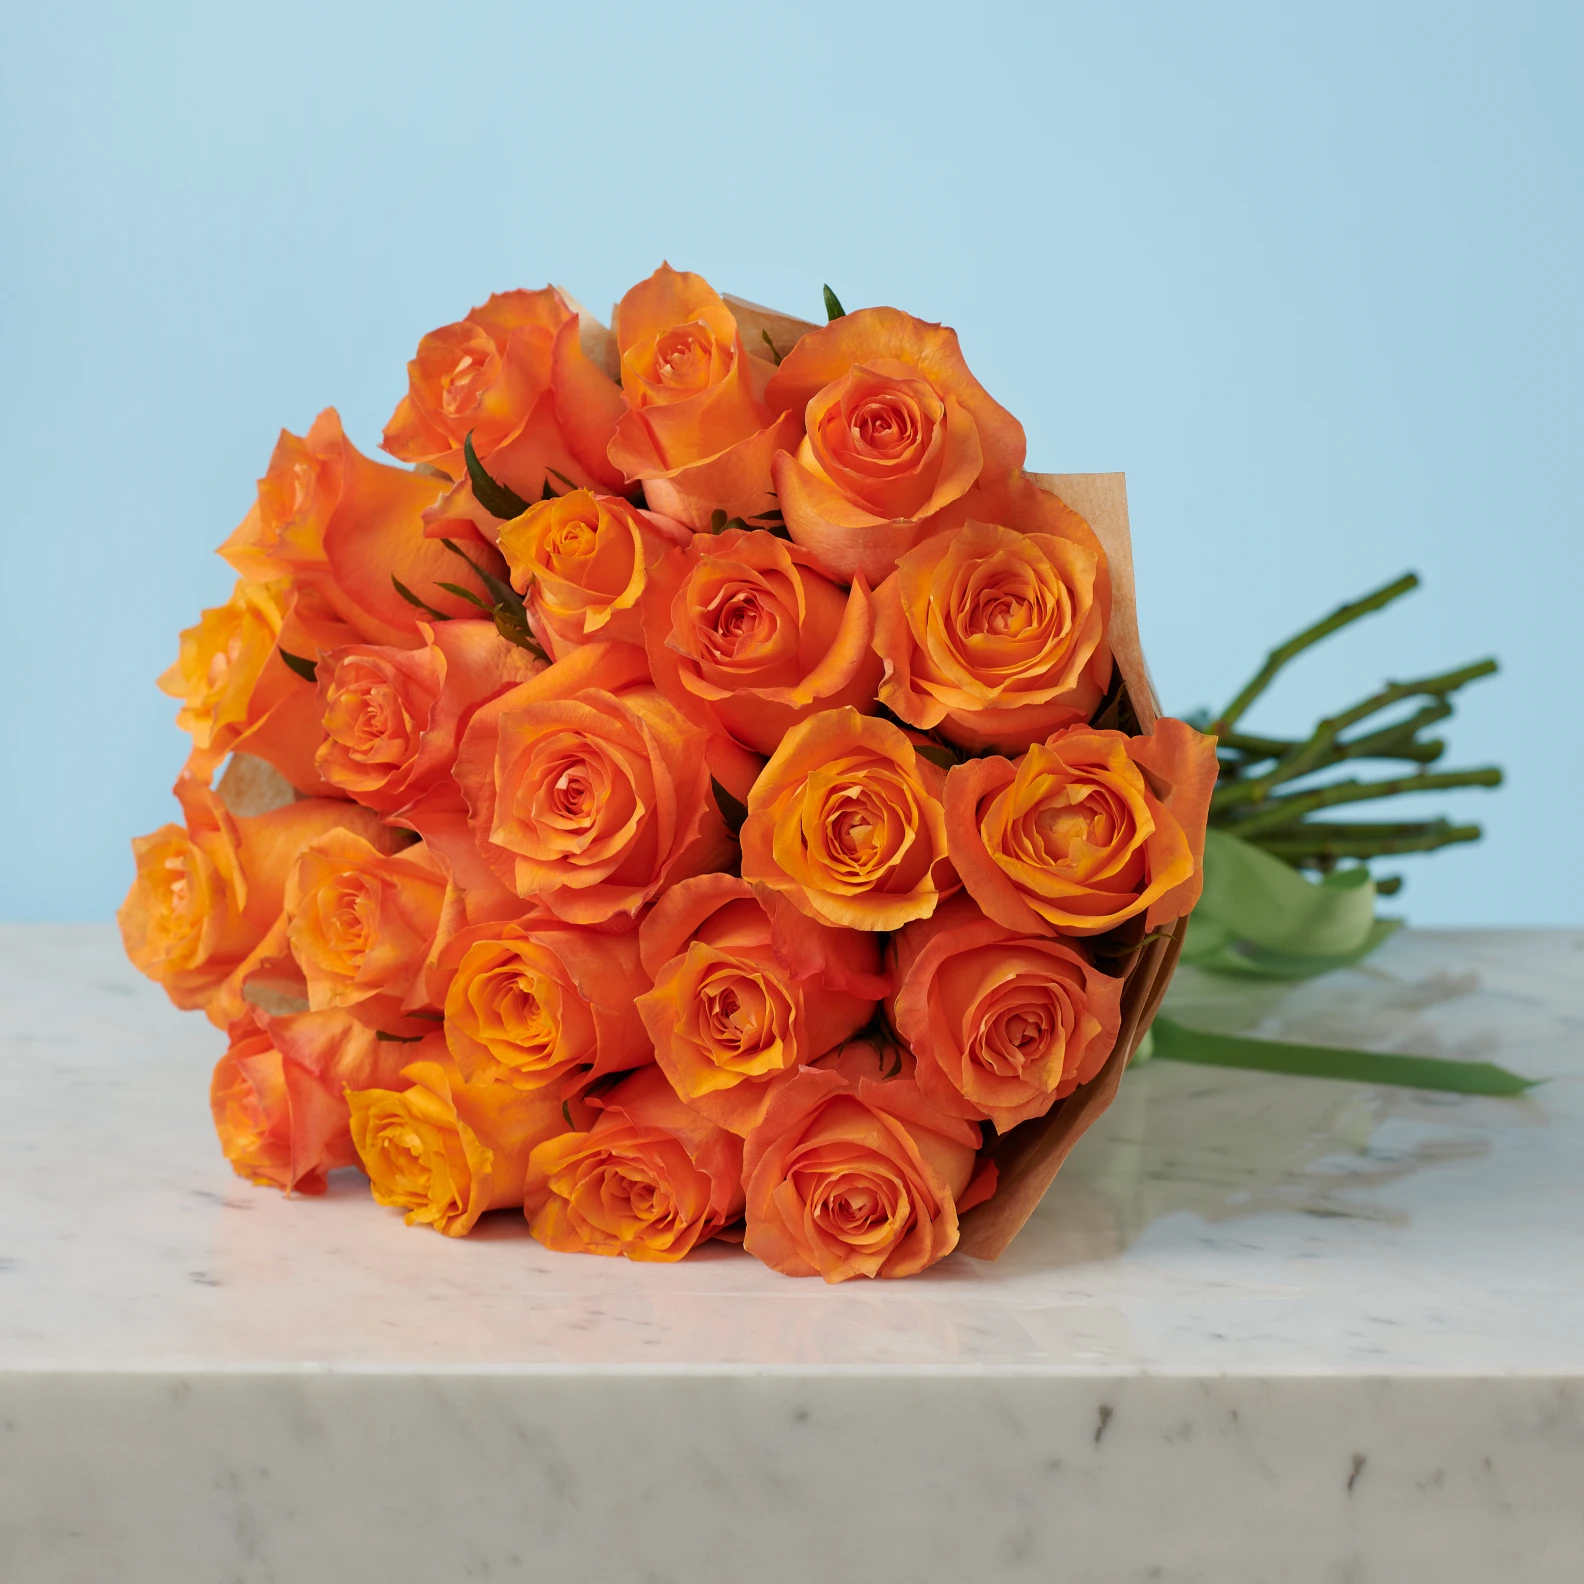 20 Premium Orange Roses - image №5